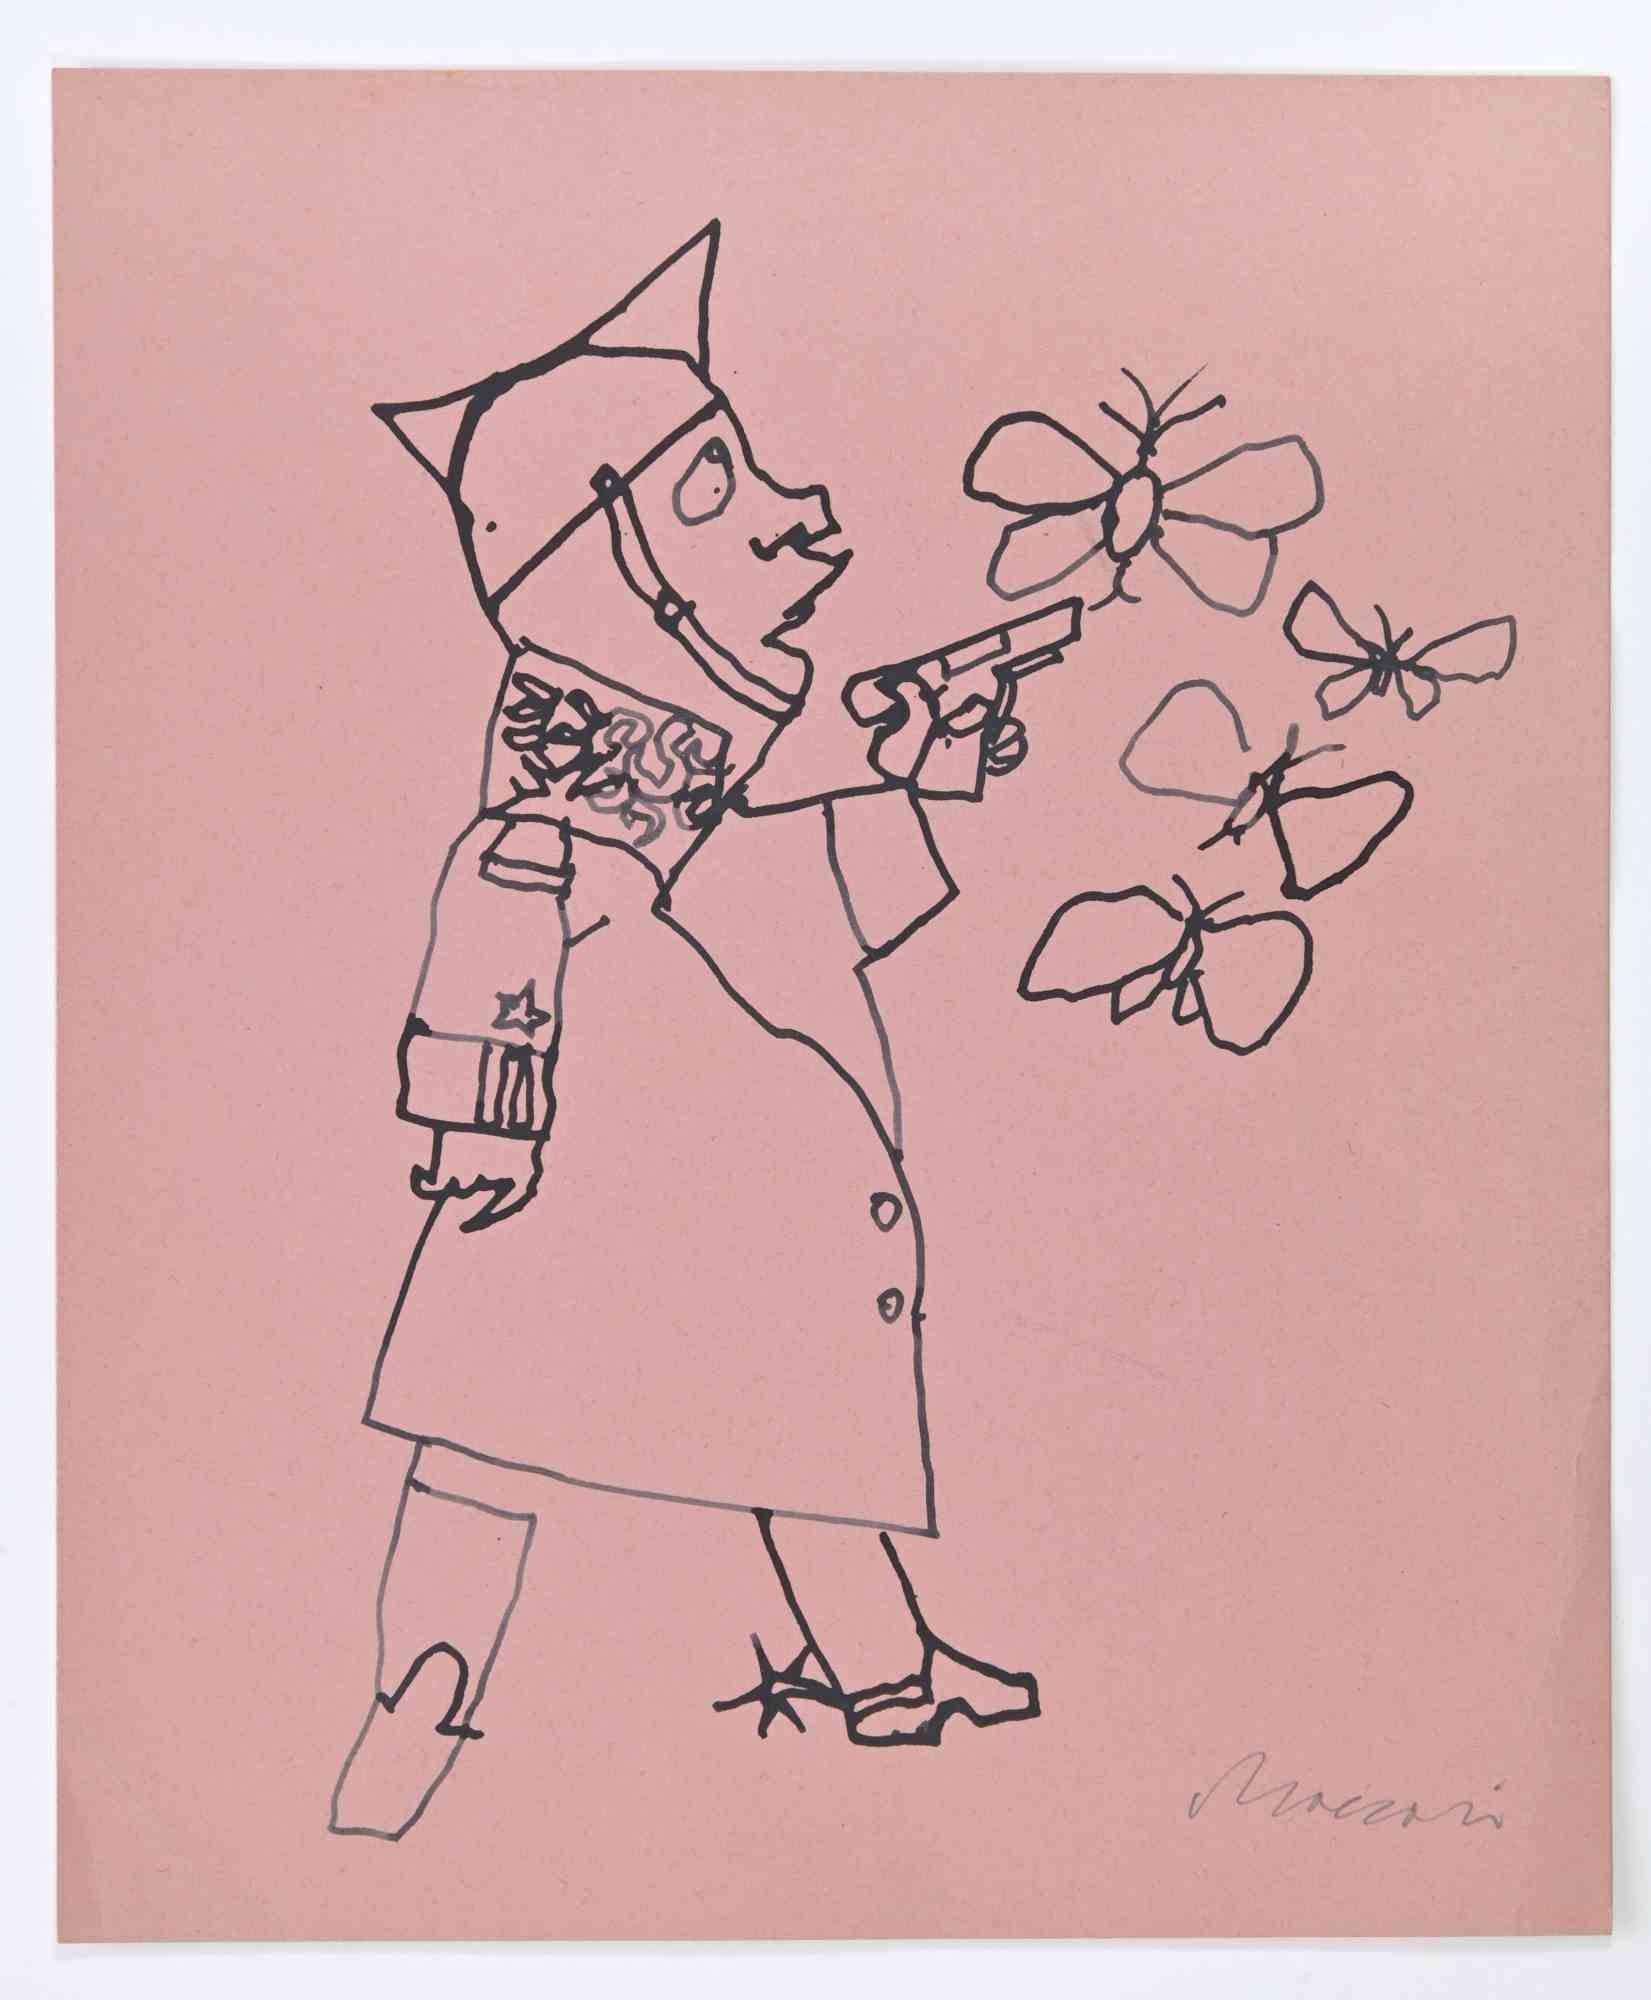 Soldat und Schmetterlinge ist eine Tuschezeichnung von Mino Maccari (1924-1989) aus dem Jahr 1965.

Handsigniert am unteren Rand.

Guter Zustand.

Mino Maccari (Siena, 1924-Rom, 16. Juni 1989) war ein italienischer Schriftsteller, Maler, Graveur und